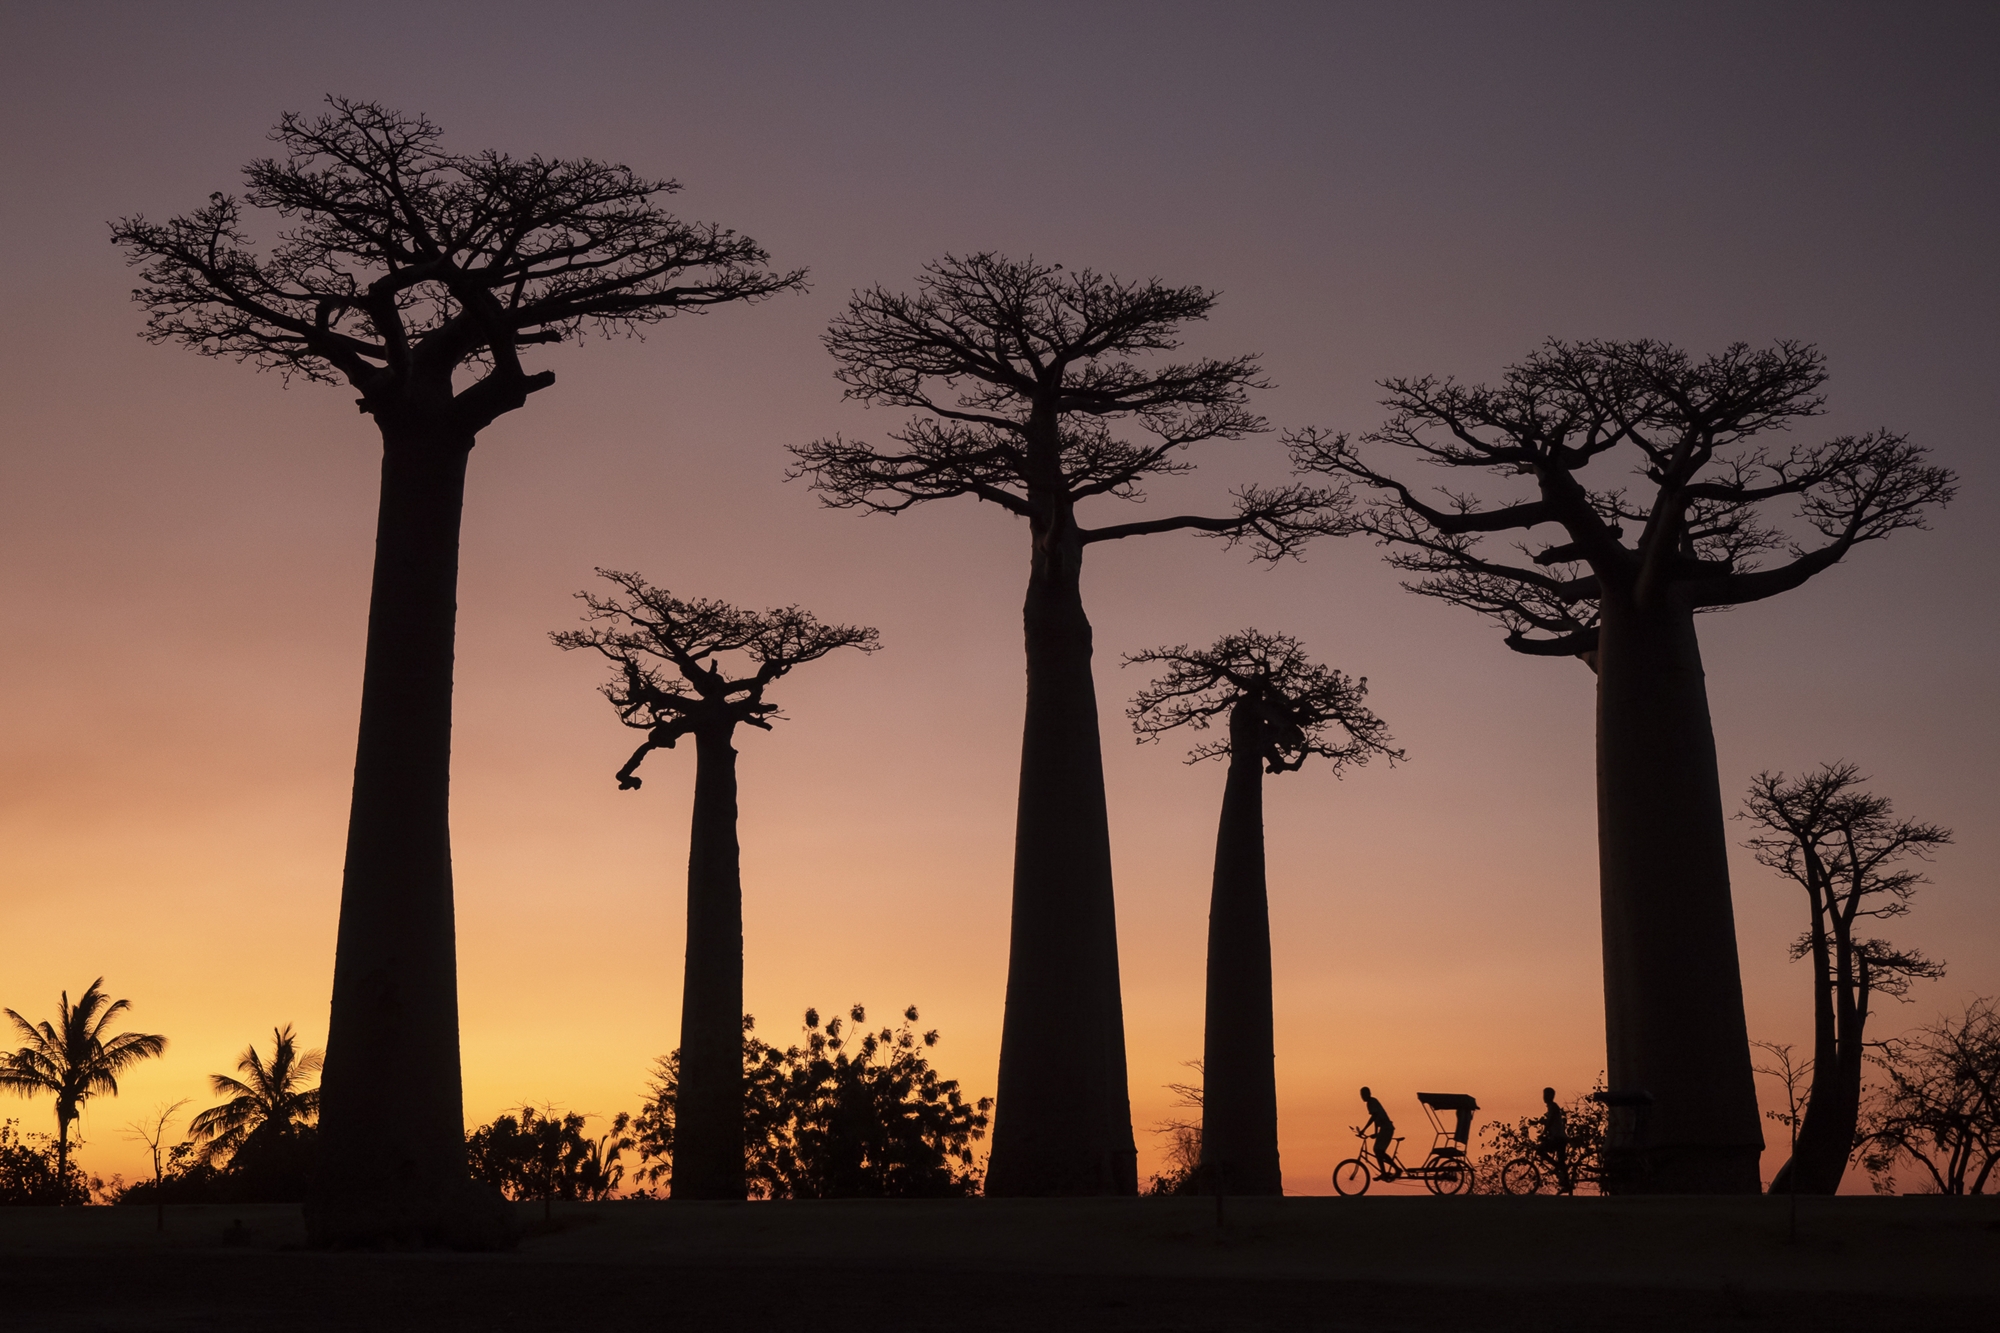 fotoNAT-UB 2019 - SELECCIONADA DE NATURA: L'avinguda dels baobabs (Montserrat Pallàs)